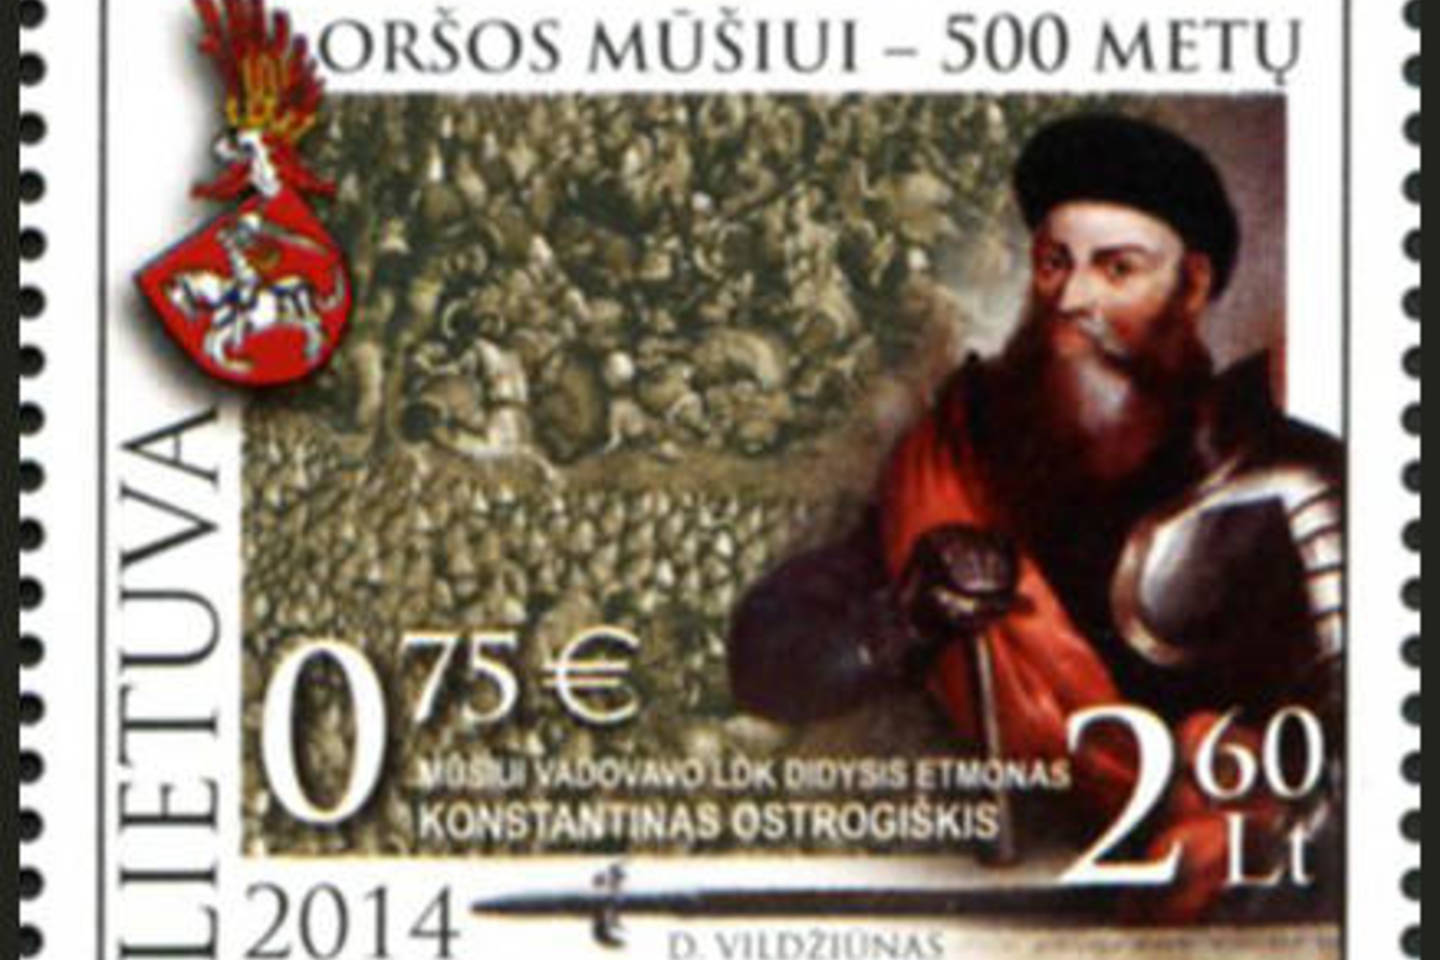 Oršos mūšis įvyko 1514 m. rugsėjo 8 d. tarp Lietuvos didžiosios kunigaikštystės ir Maskvos didžiosios kunigaikštystės kariuomenių, netoli Oršos.